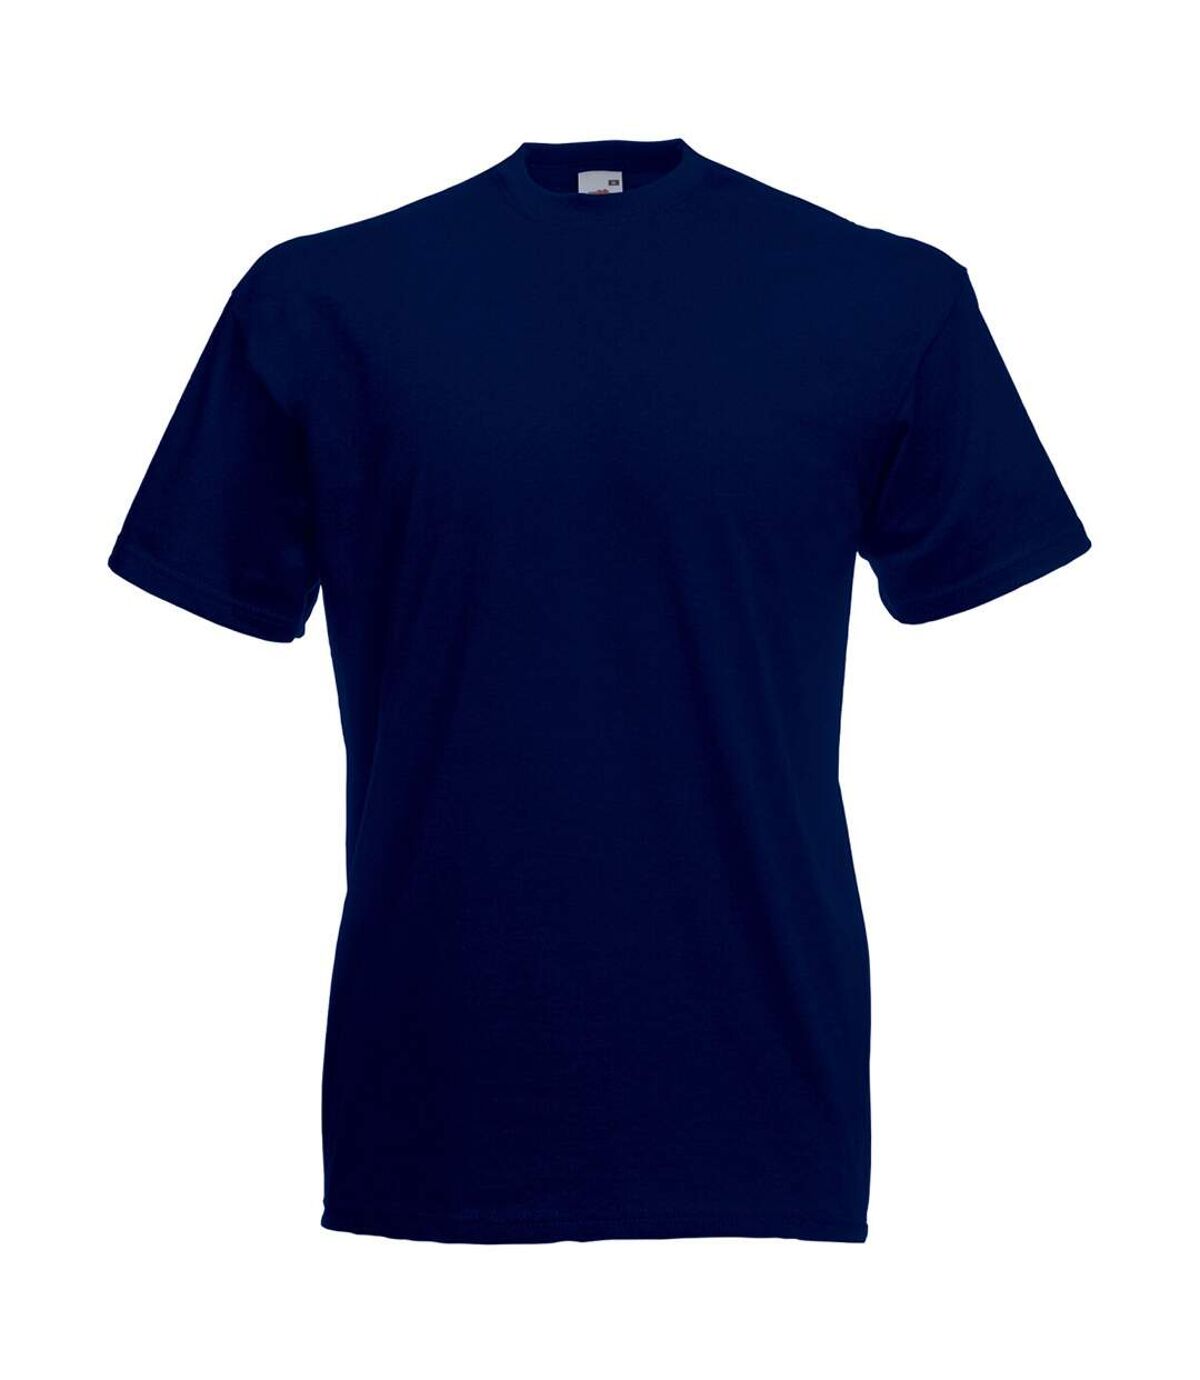 T-shirt à manches courtes - Homme (Bleu nuit) - UTBC3900